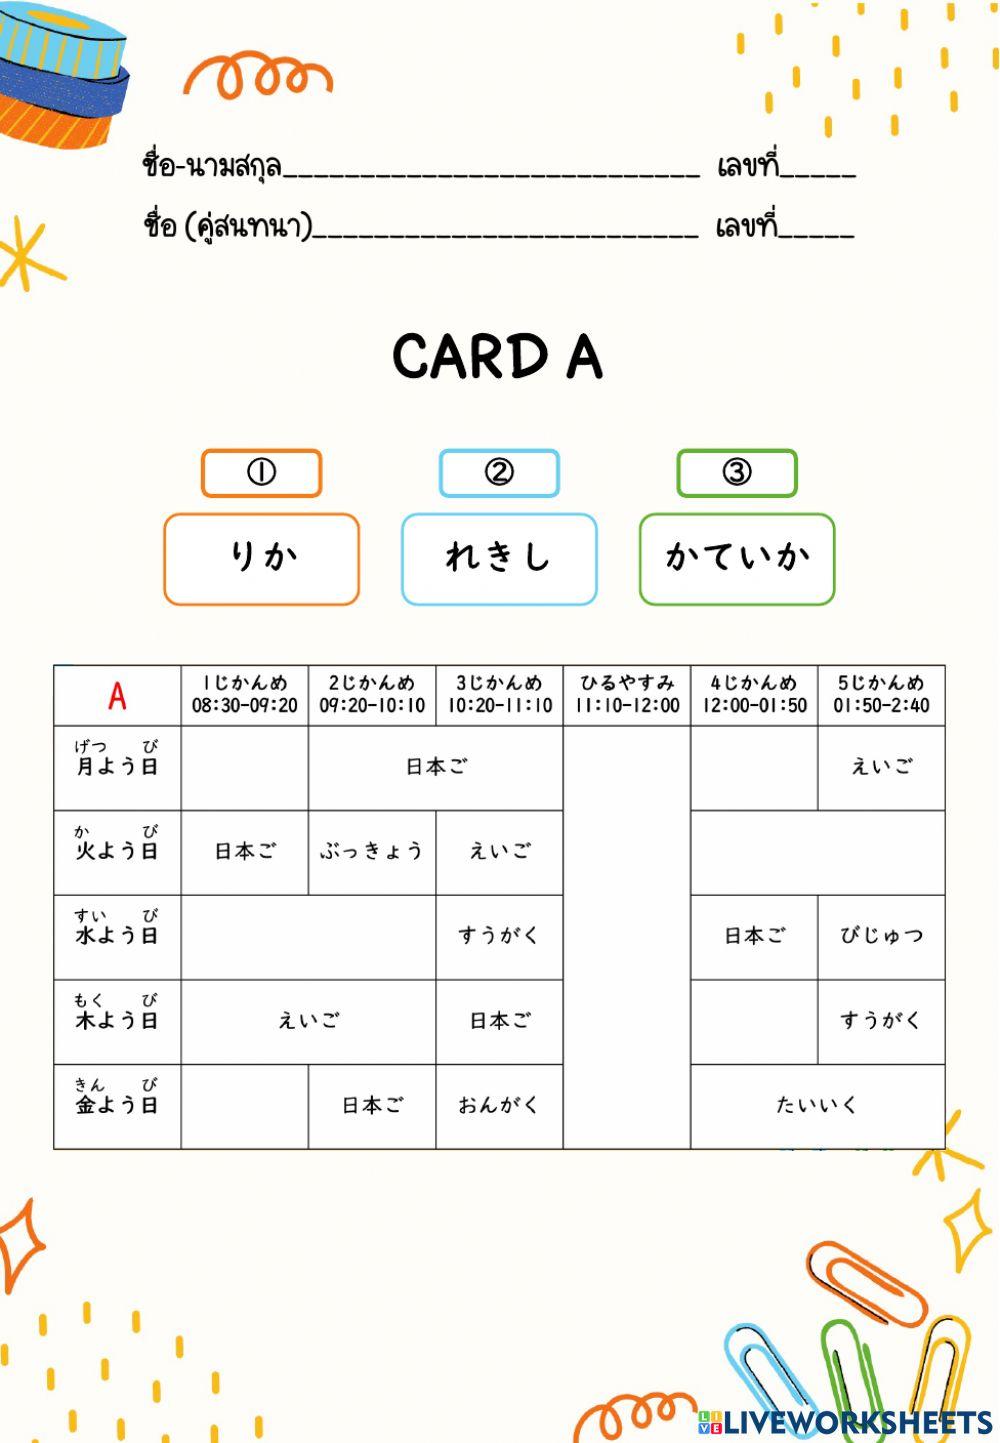 Card A